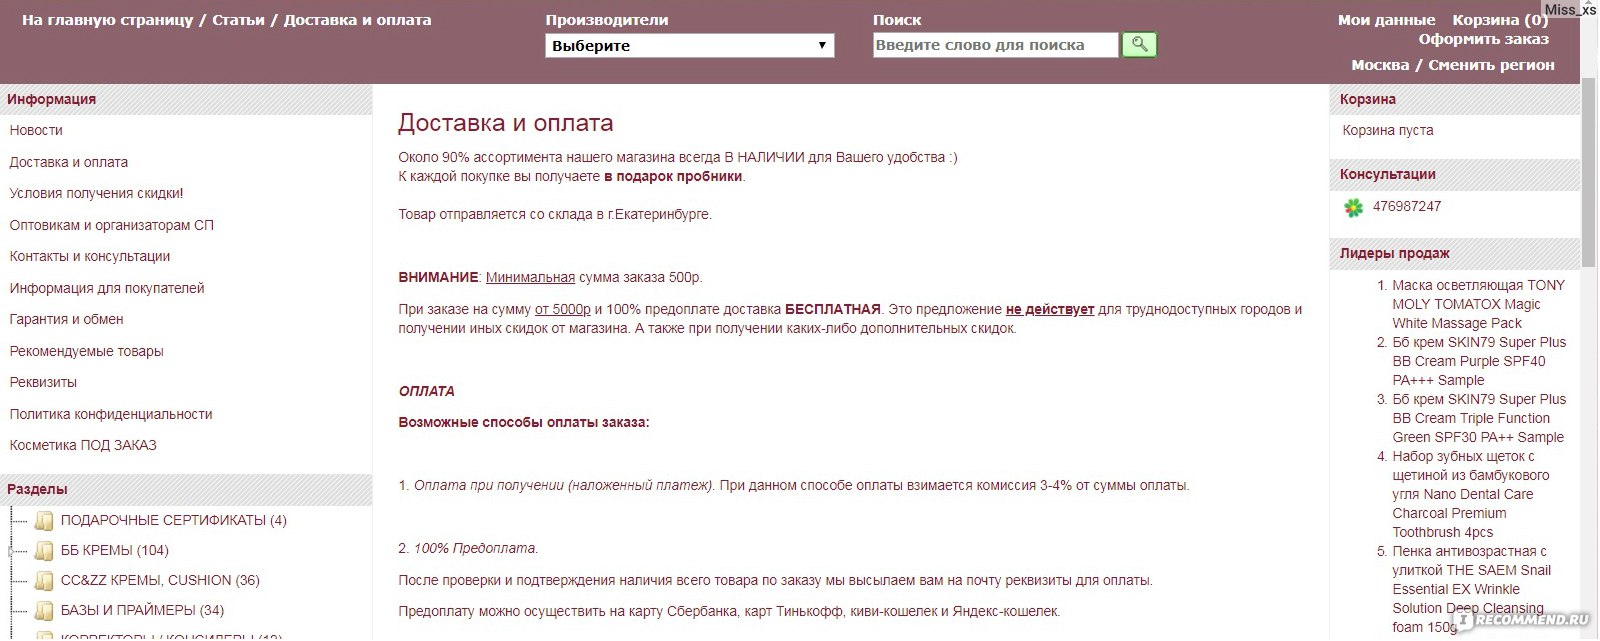 Bbcream66 Ru Интернет Магазин